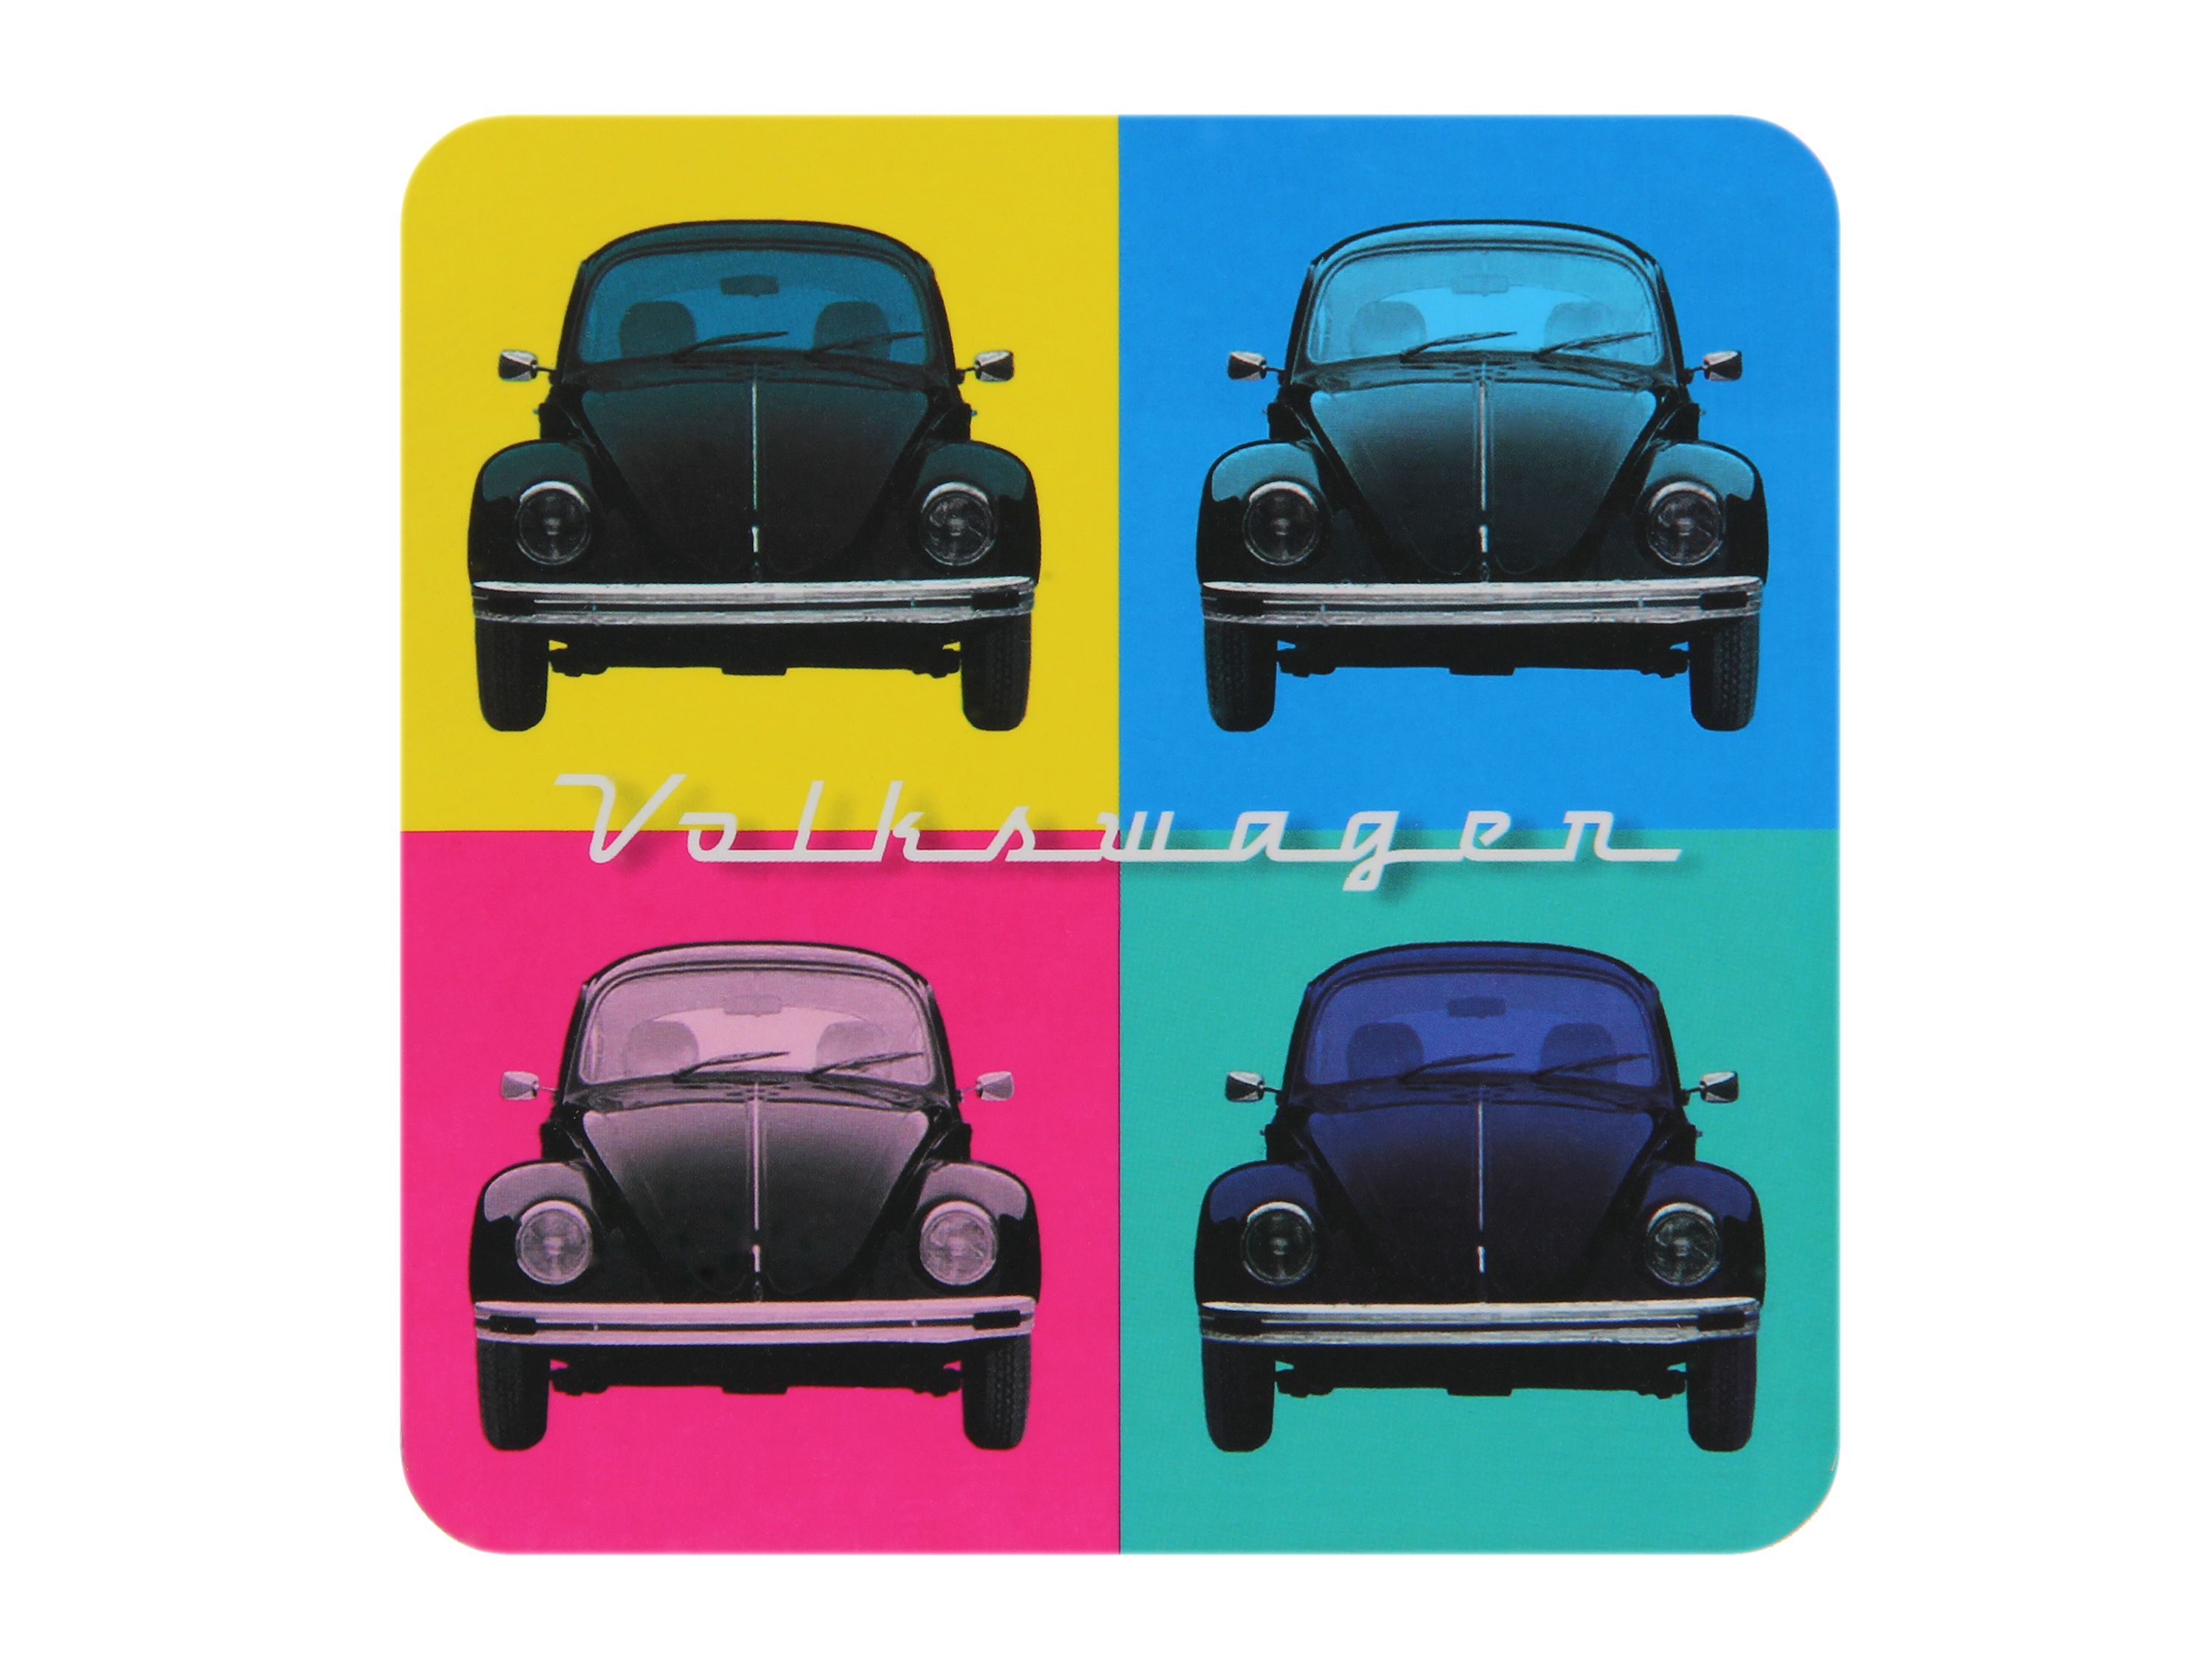 Set di 4 sottobicchieri VW Beetle in custodia di cartone - Multicolore